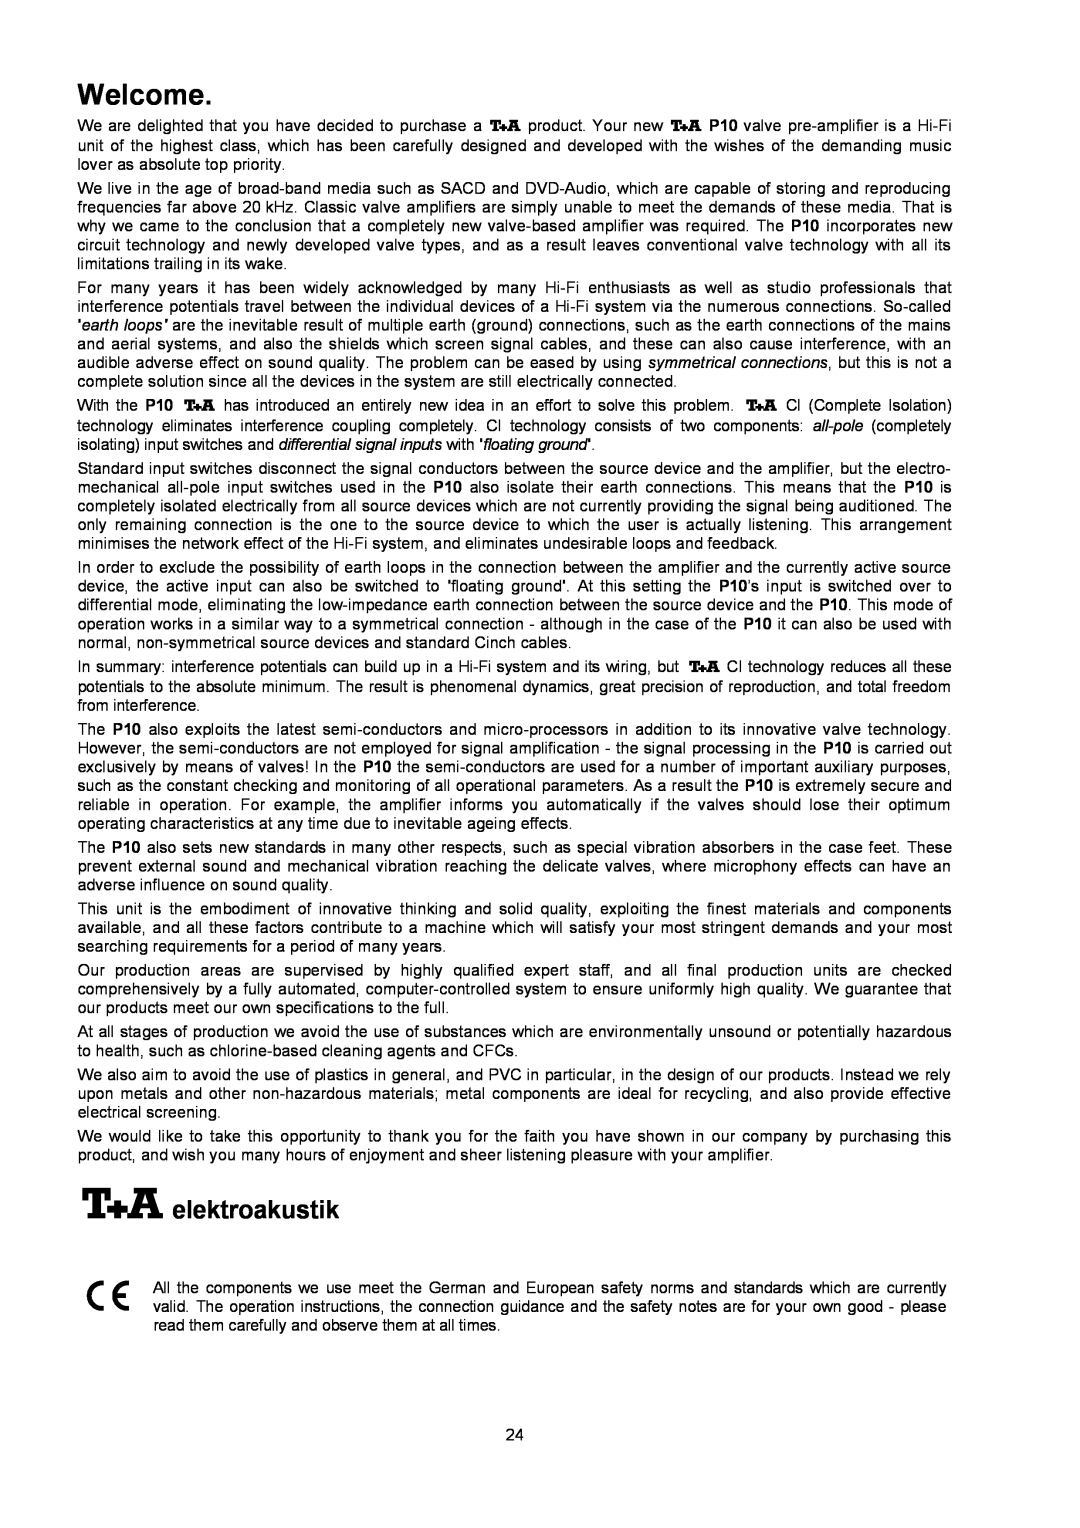 T+A Elektroakustik P 10 user manual Welcome, elektroakustik 